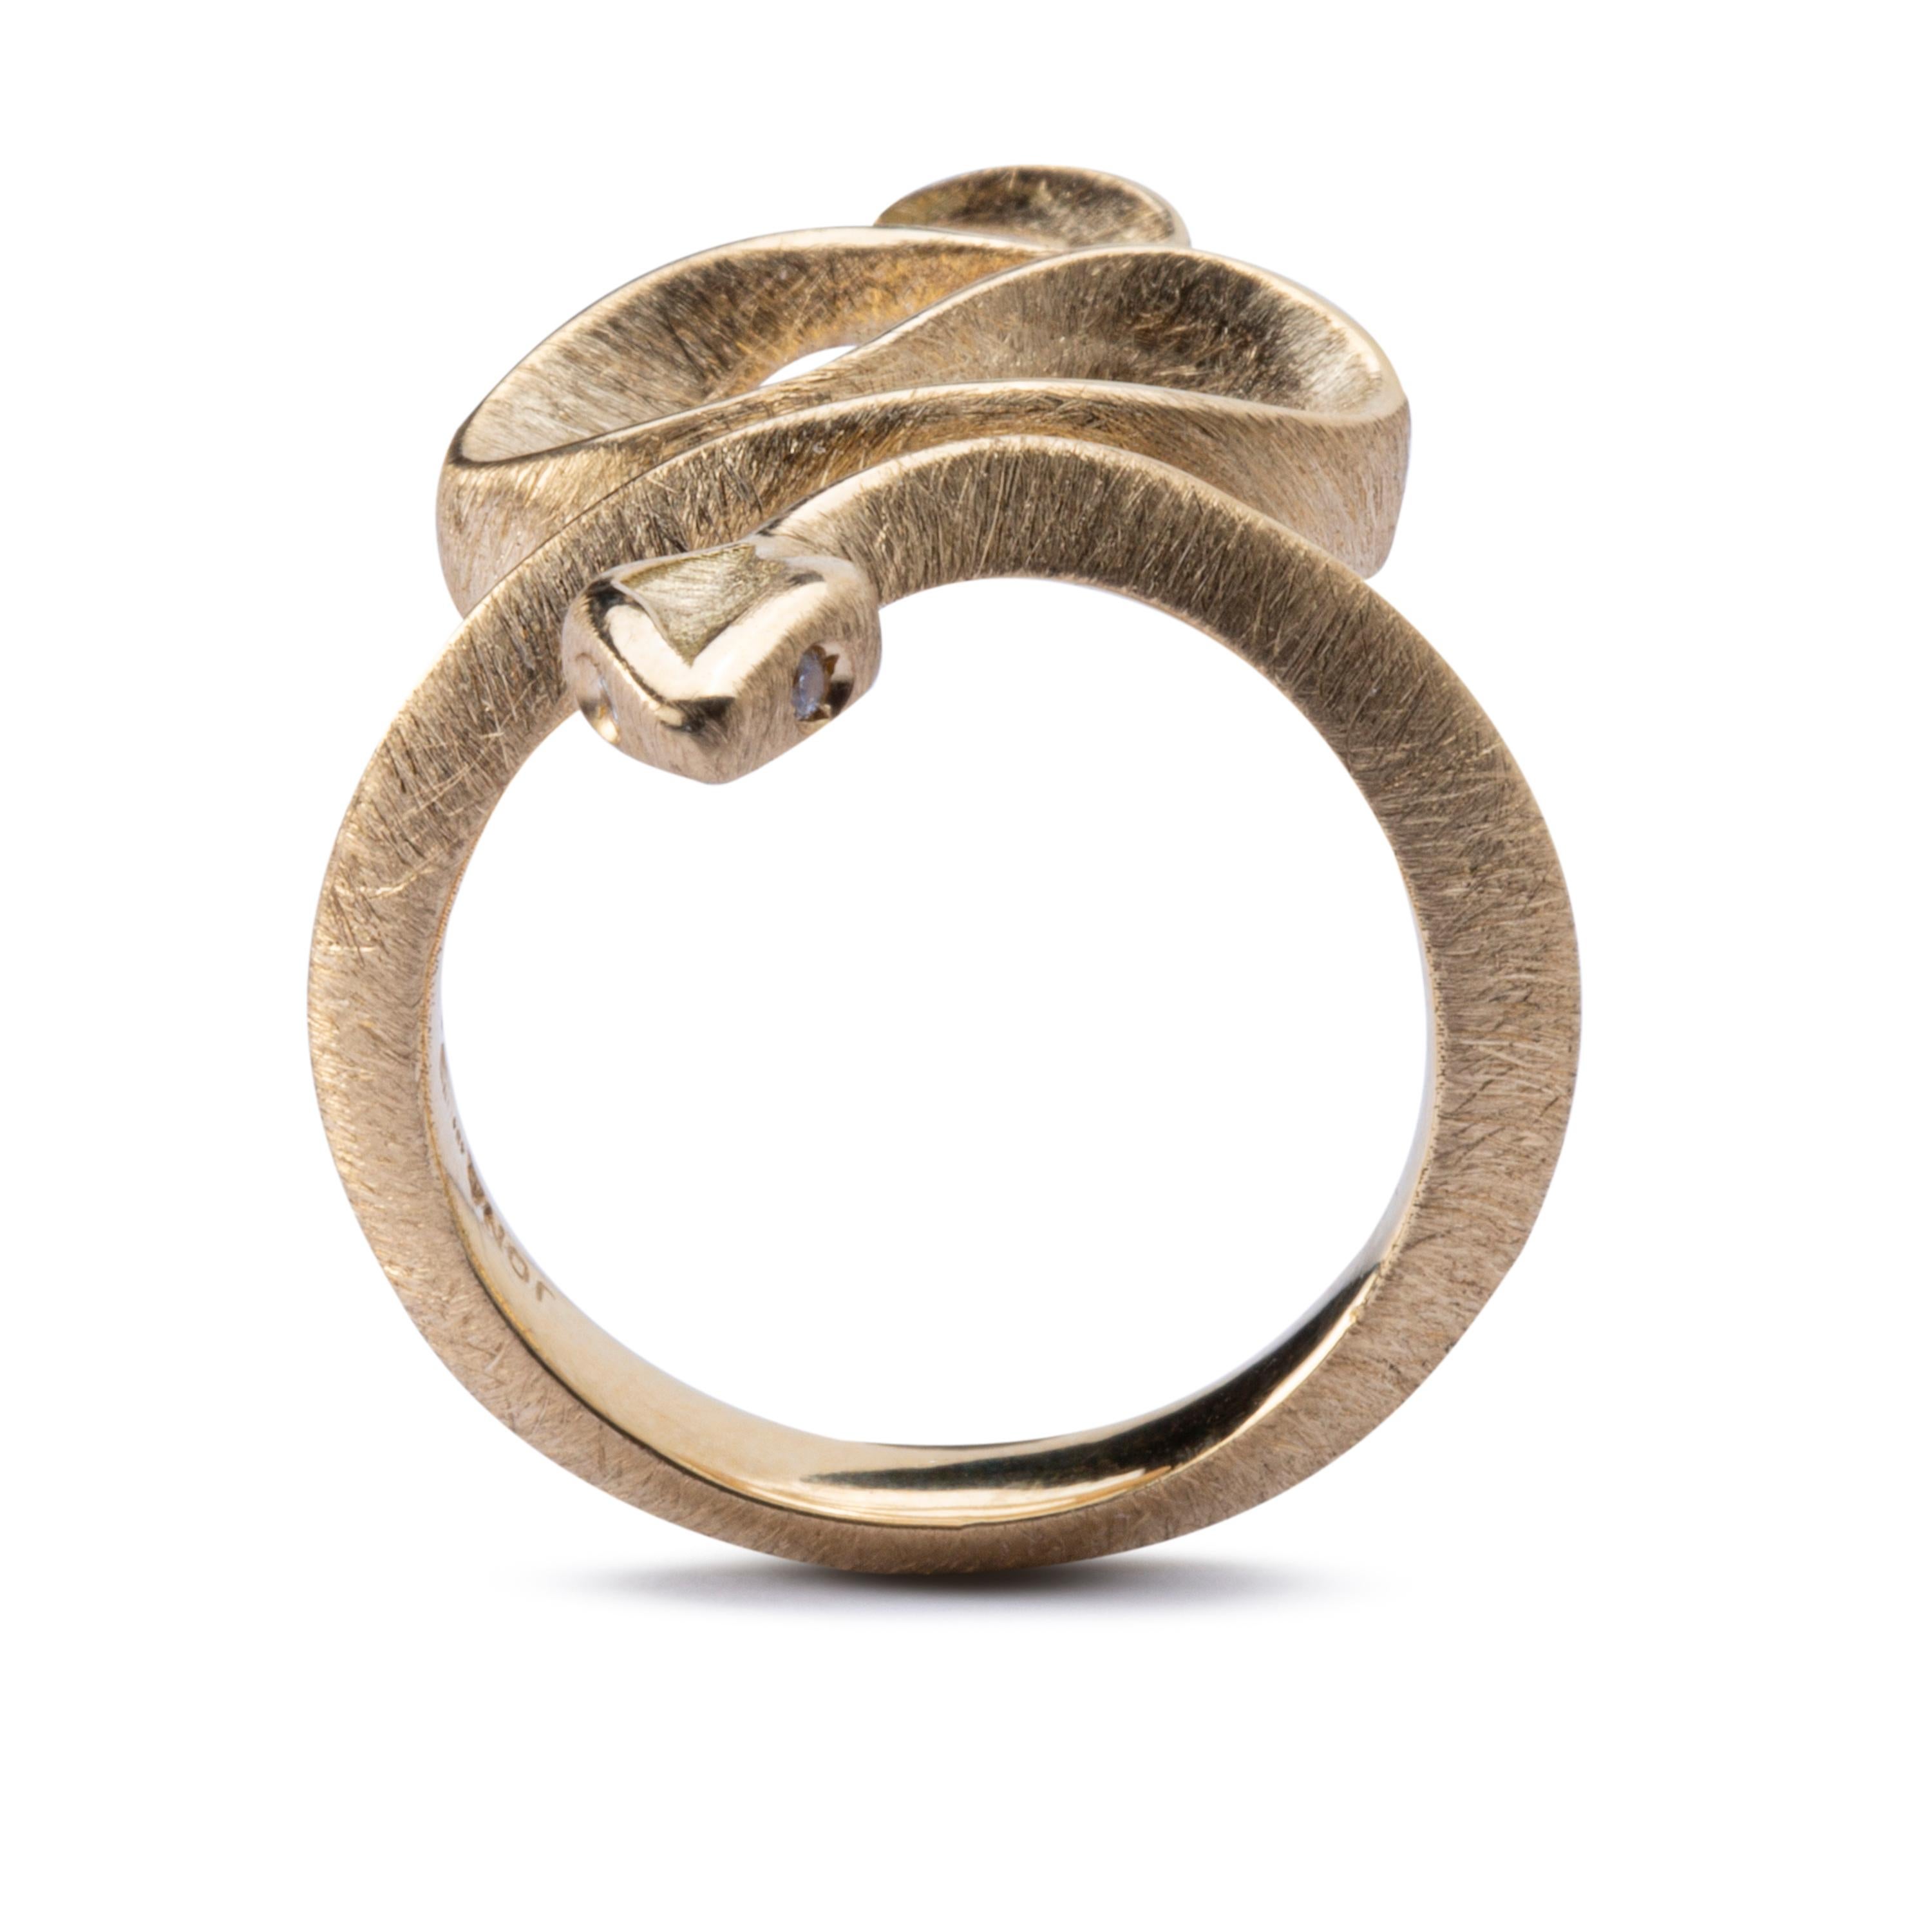 coiled snake ring